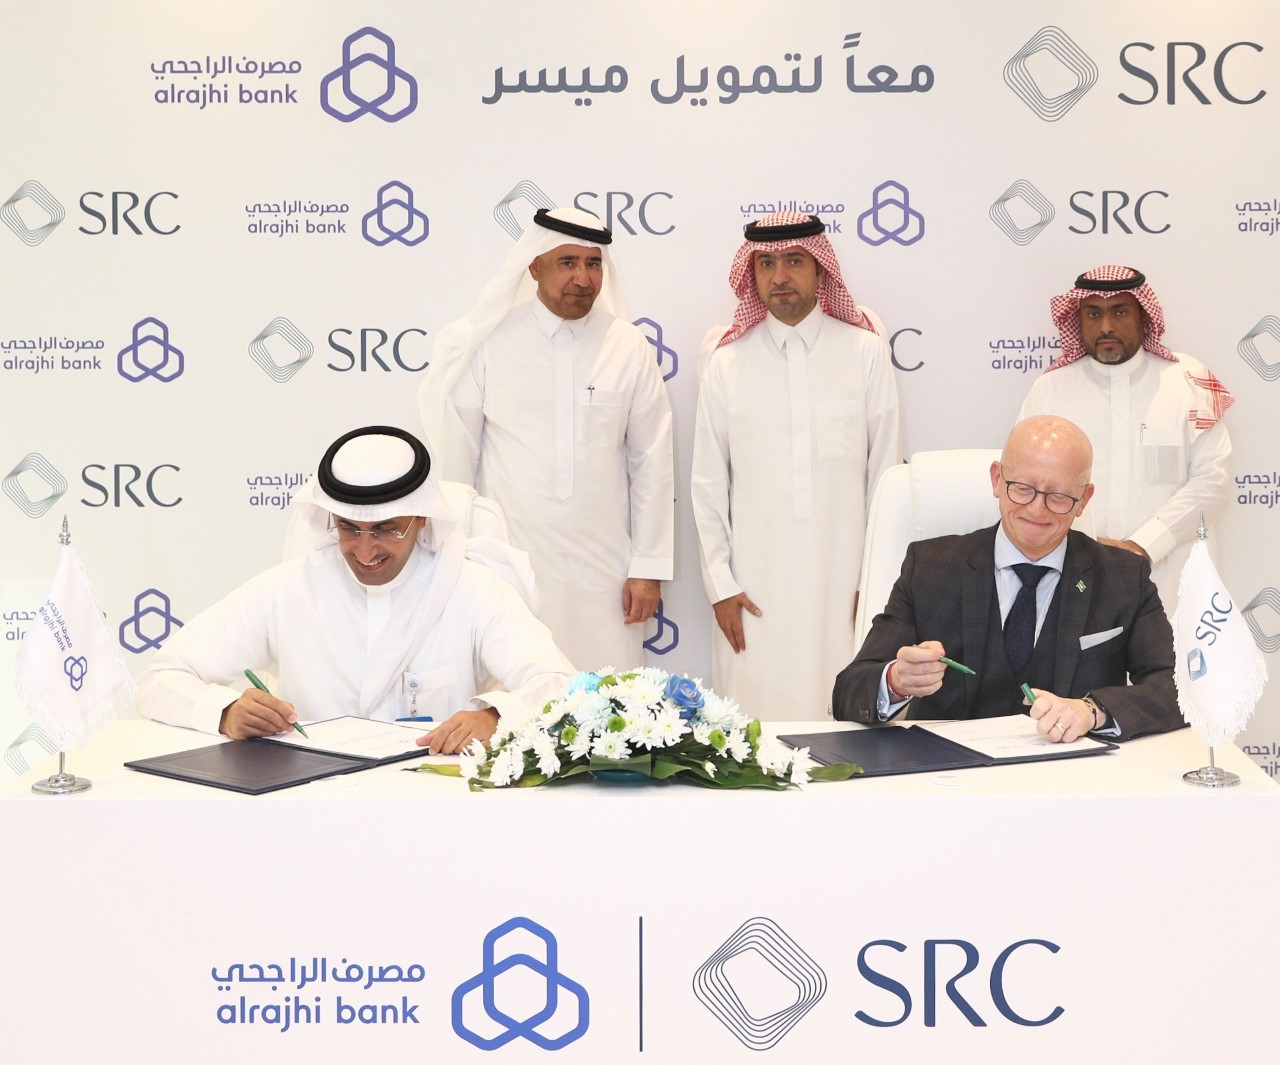 السعودية لإعادة التمويل العقاري تُوقع أكبر اتفاقية شراء محفظة مع “مصرف الراجحي”  بـ 5 مليارات ريال